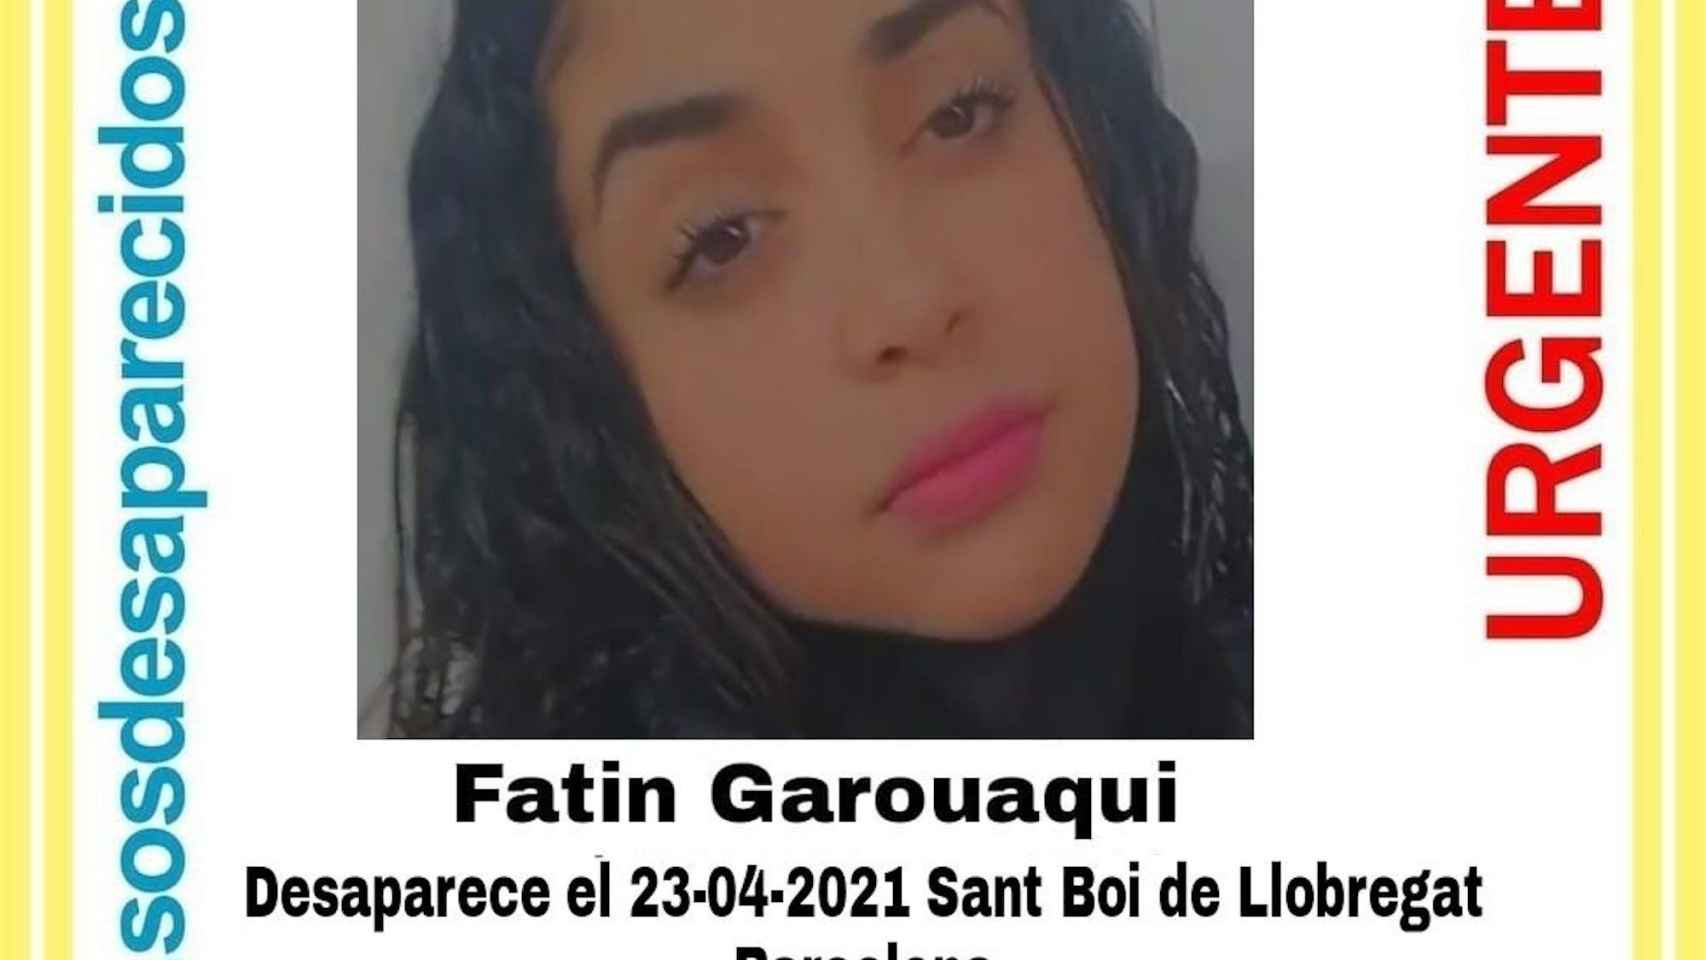 Fatin Garouaqui, la menor desaparecida por segunda vez en tres meses / SOS DESAPARECIDOS